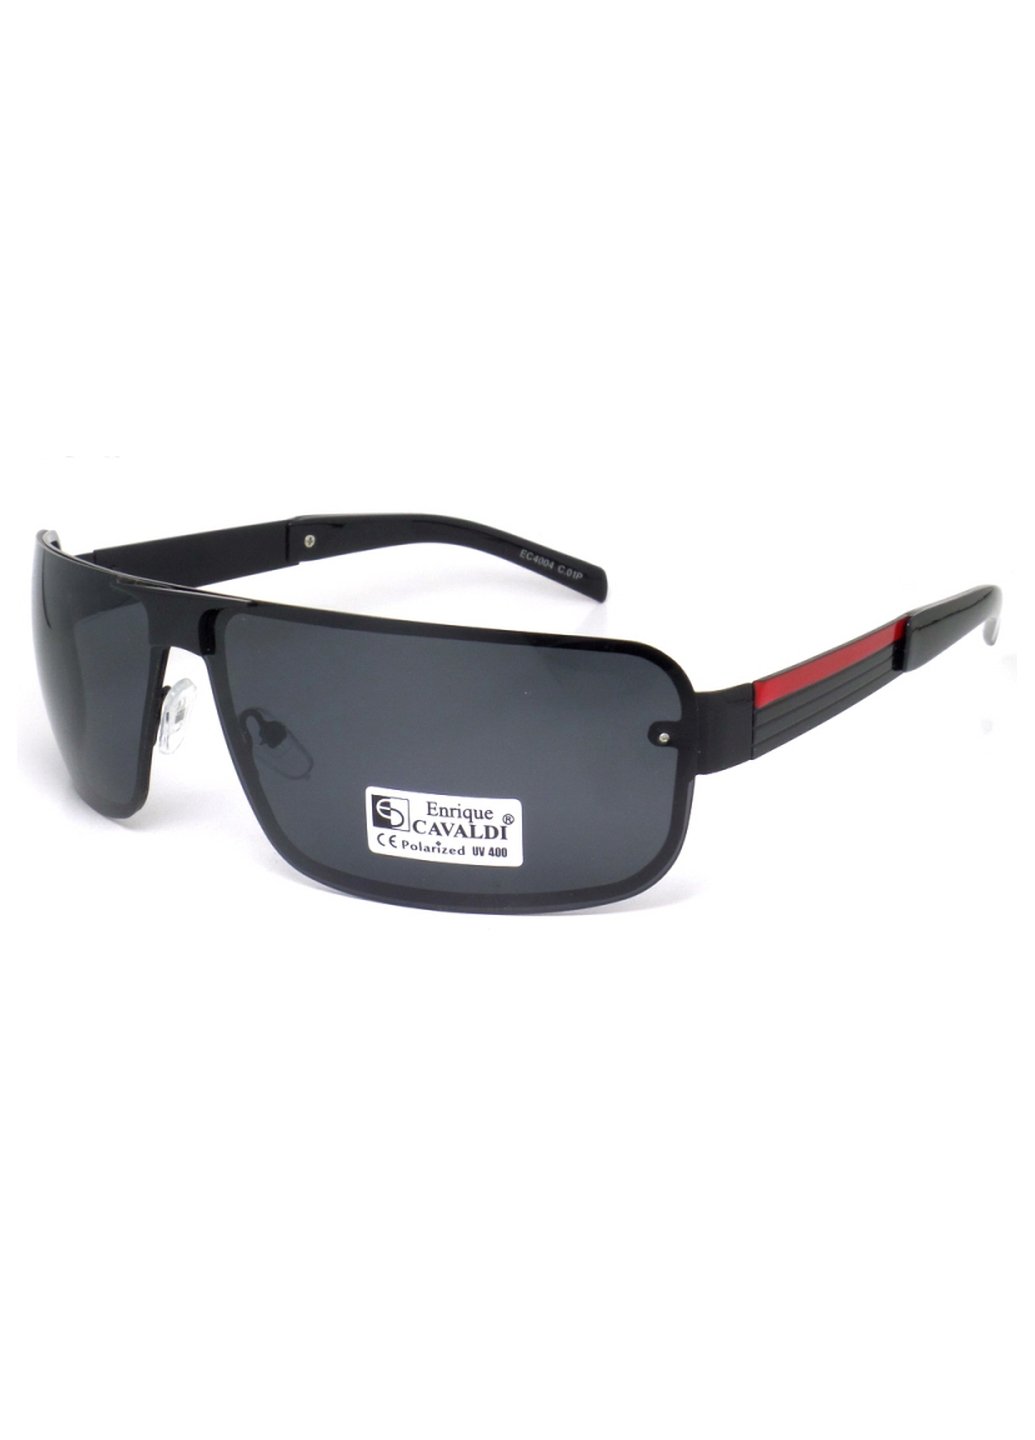 Купить Мужские солнцезащитные очки Enrique Cavaldi EC4004 150006 - Черный в интернет-магазине